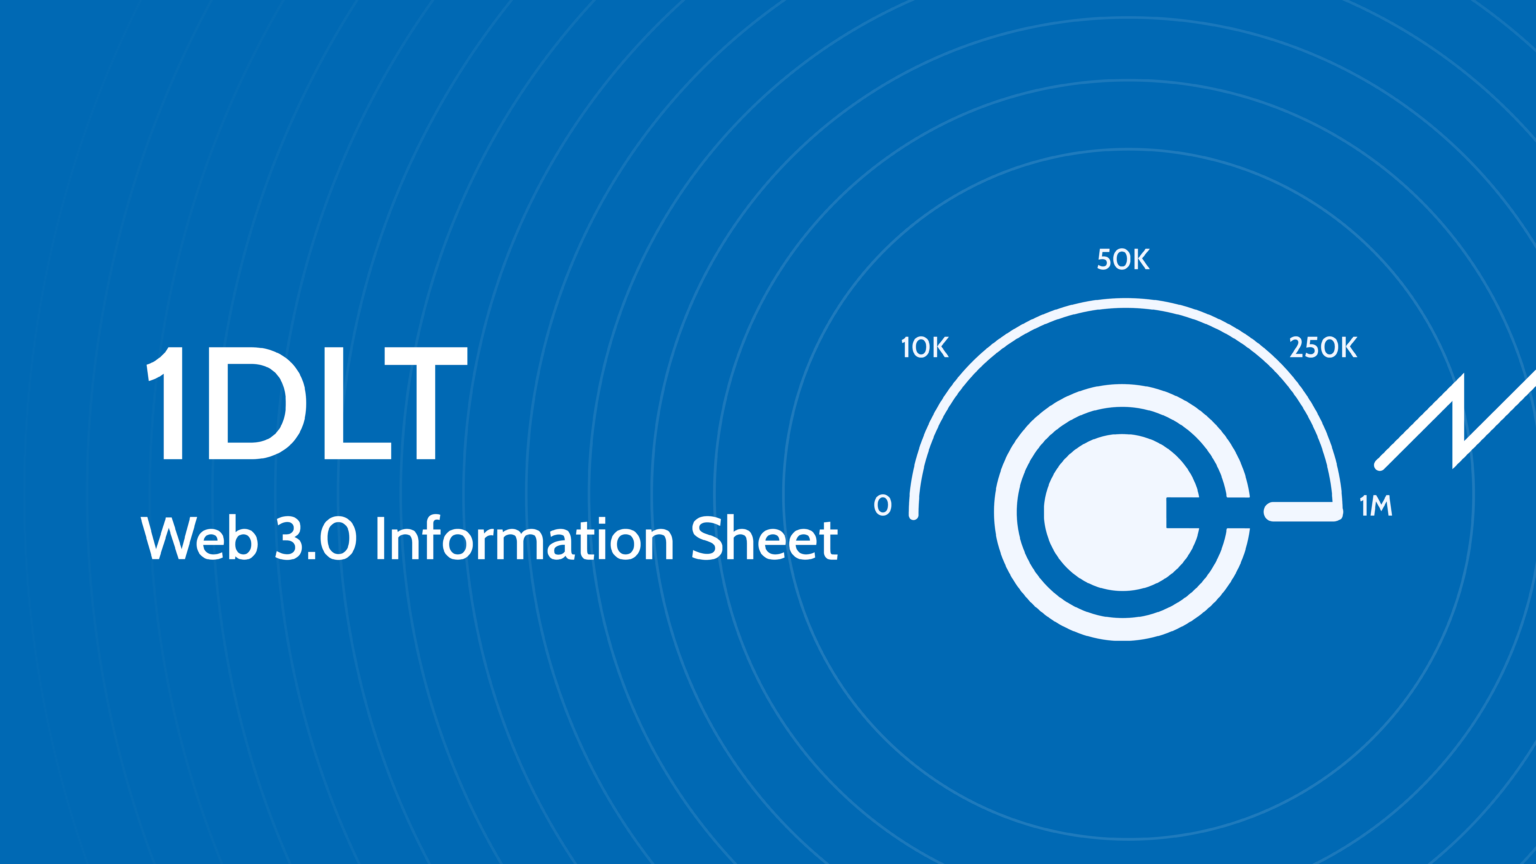 1DLT Web 3.0 Information Sheet